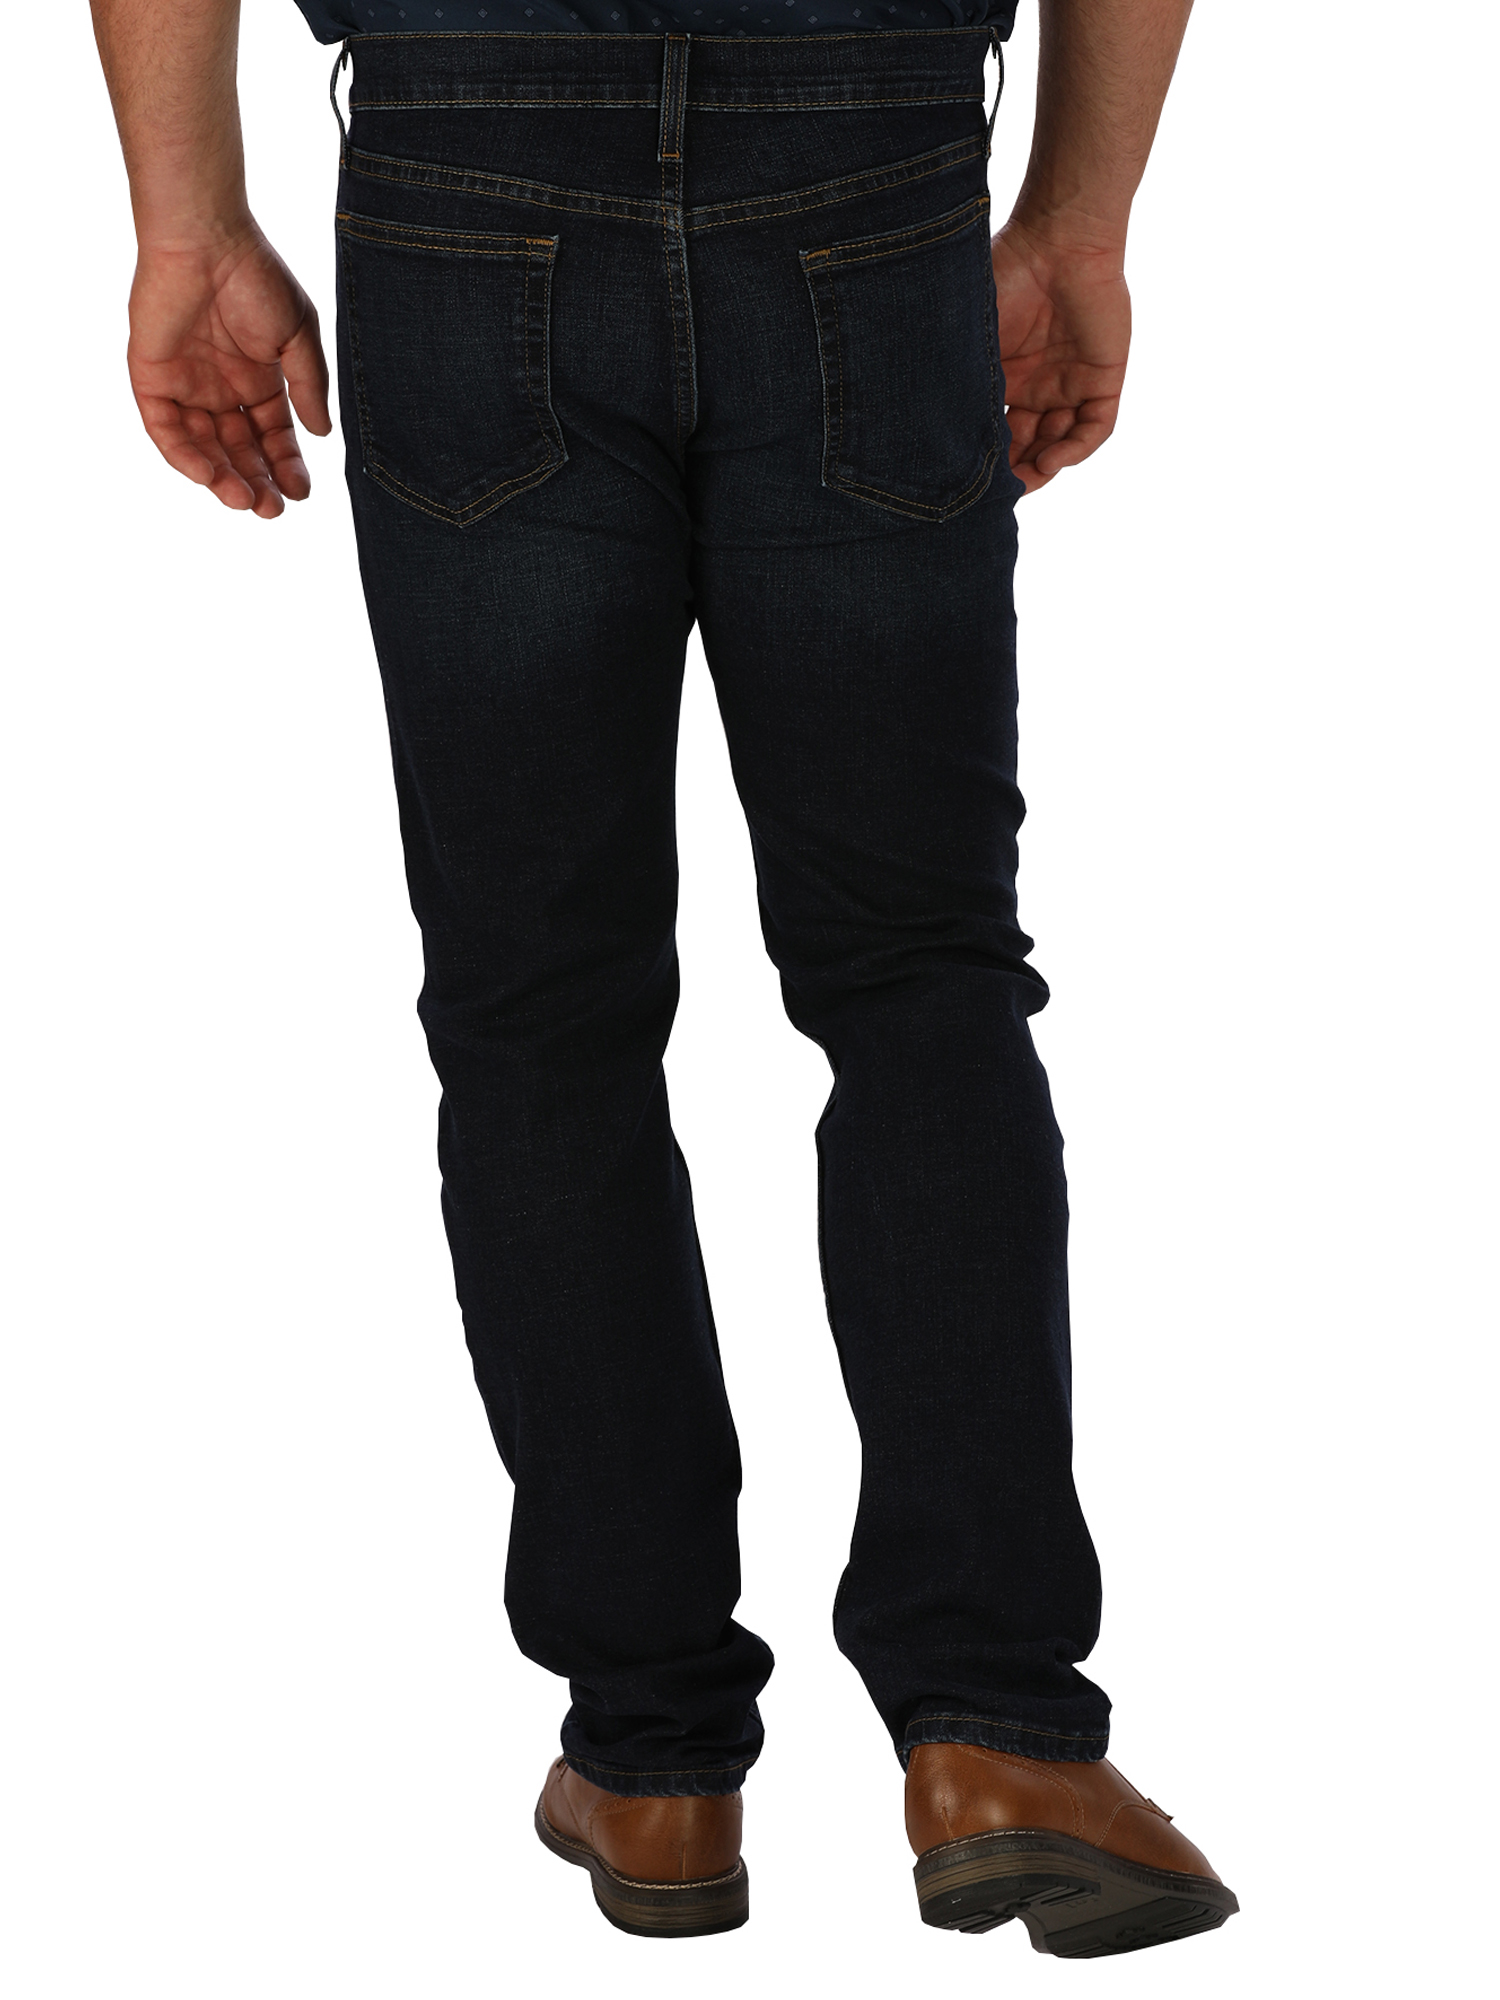 George Men's Slim Fit Jeans - image 2 of 5